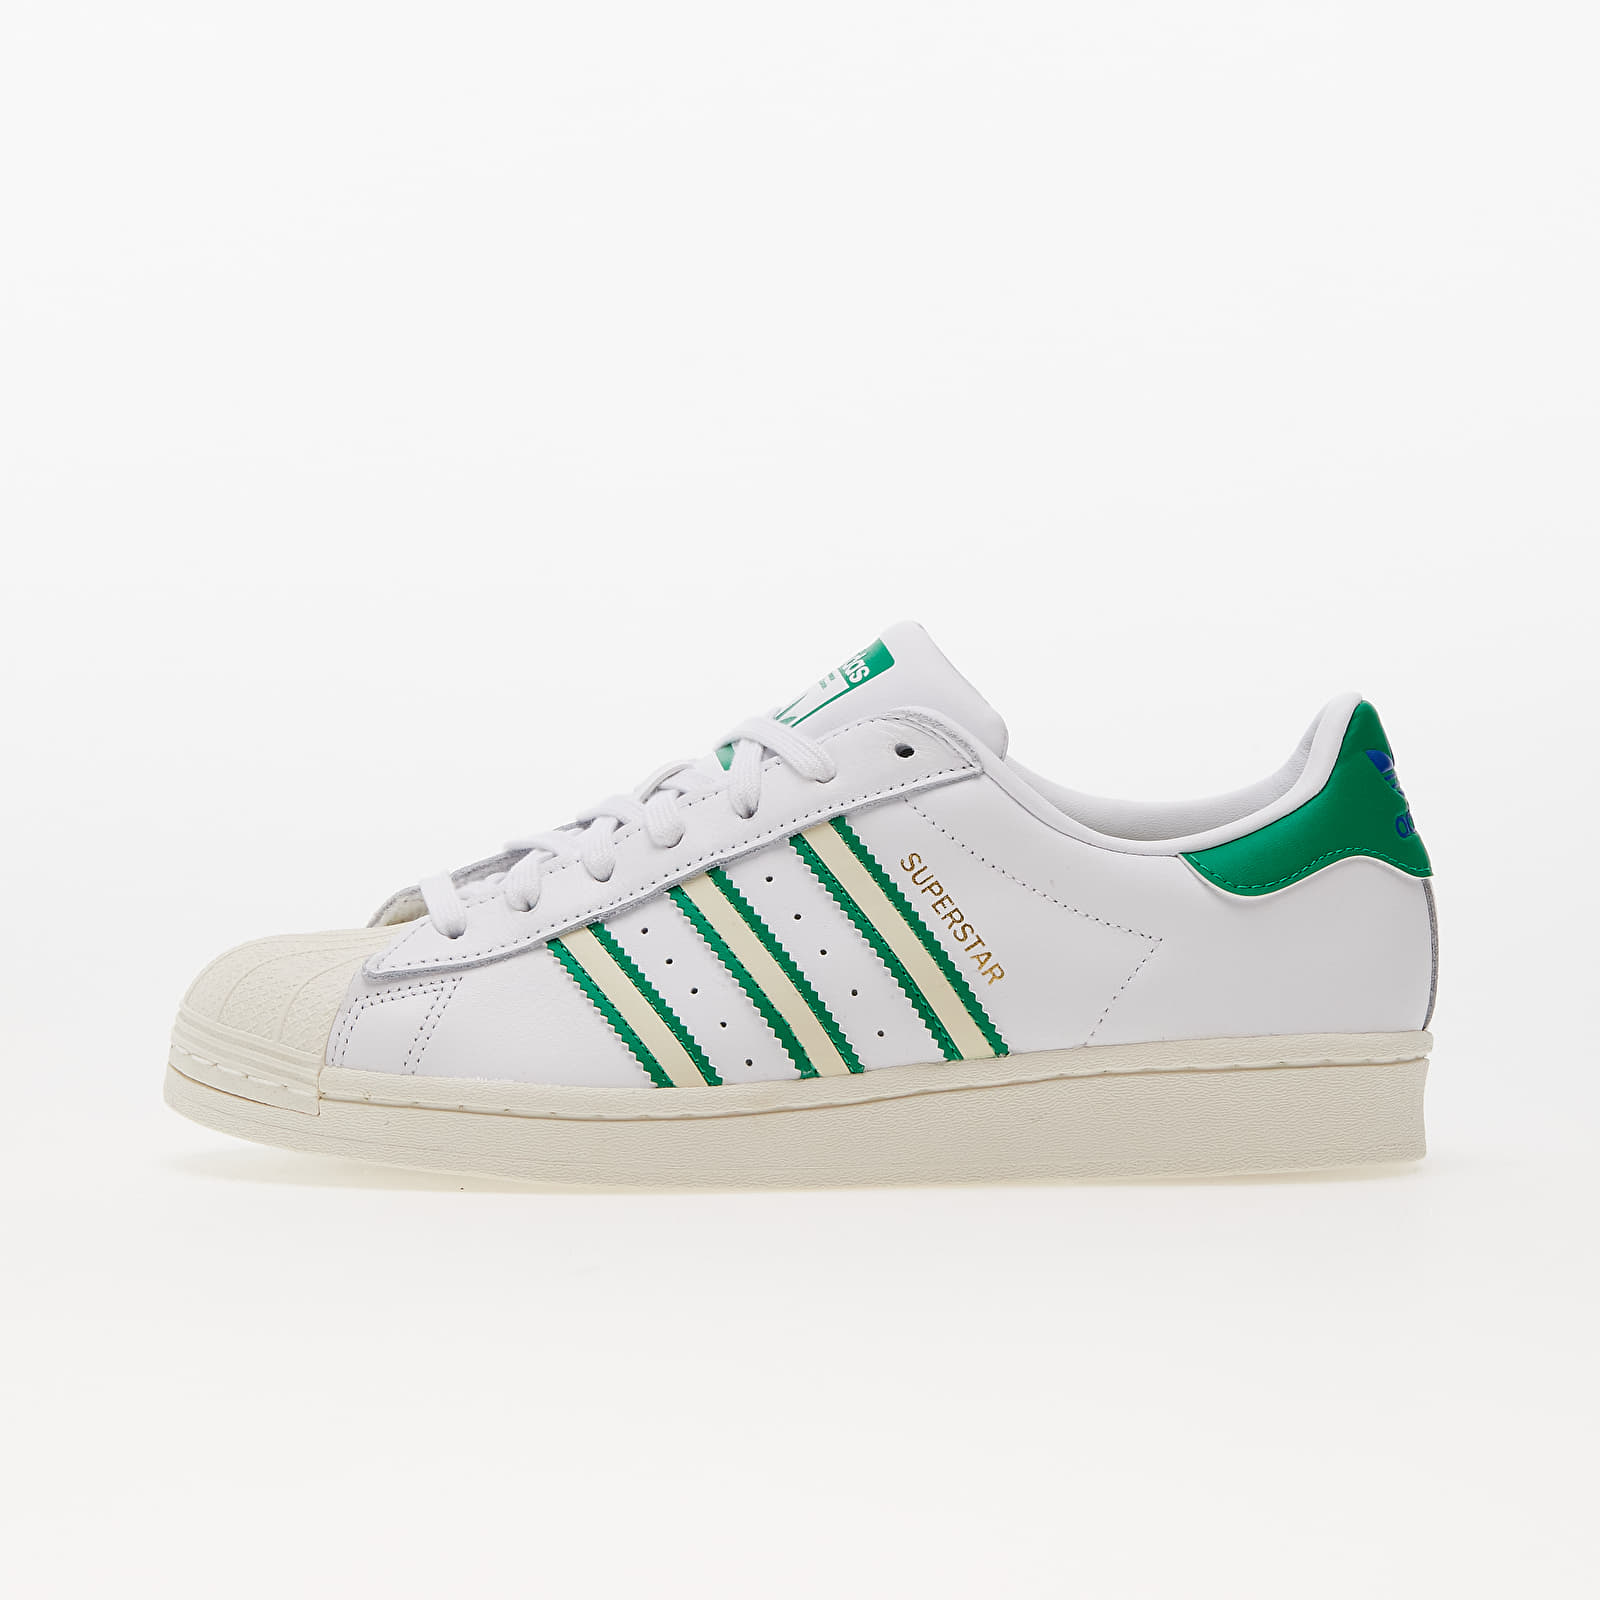 Herren Sneaker und Schuhe adidas Superstar Ftw White/ Off White/ Green